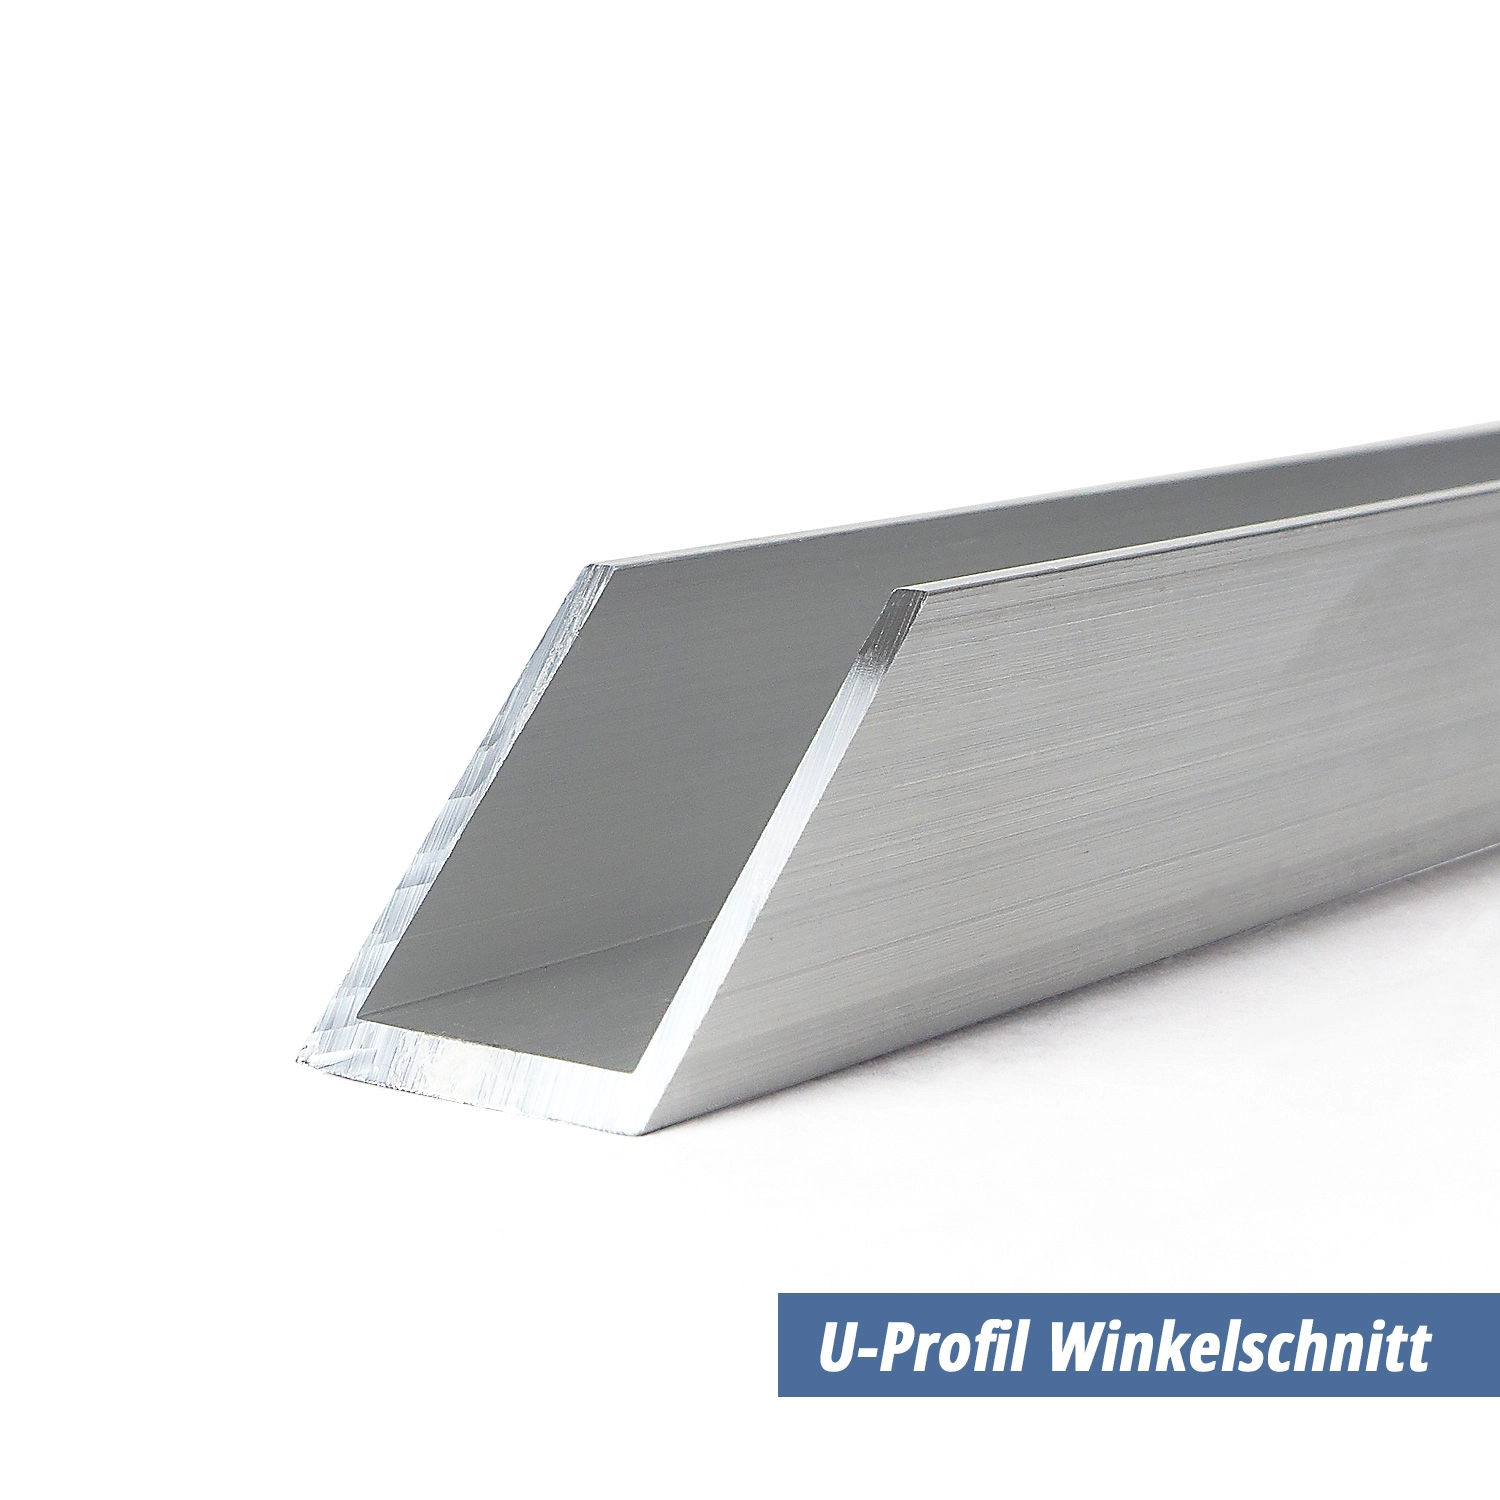 U-Profil aus Aluminium 50x50x50x3 mm Winkelschnitt